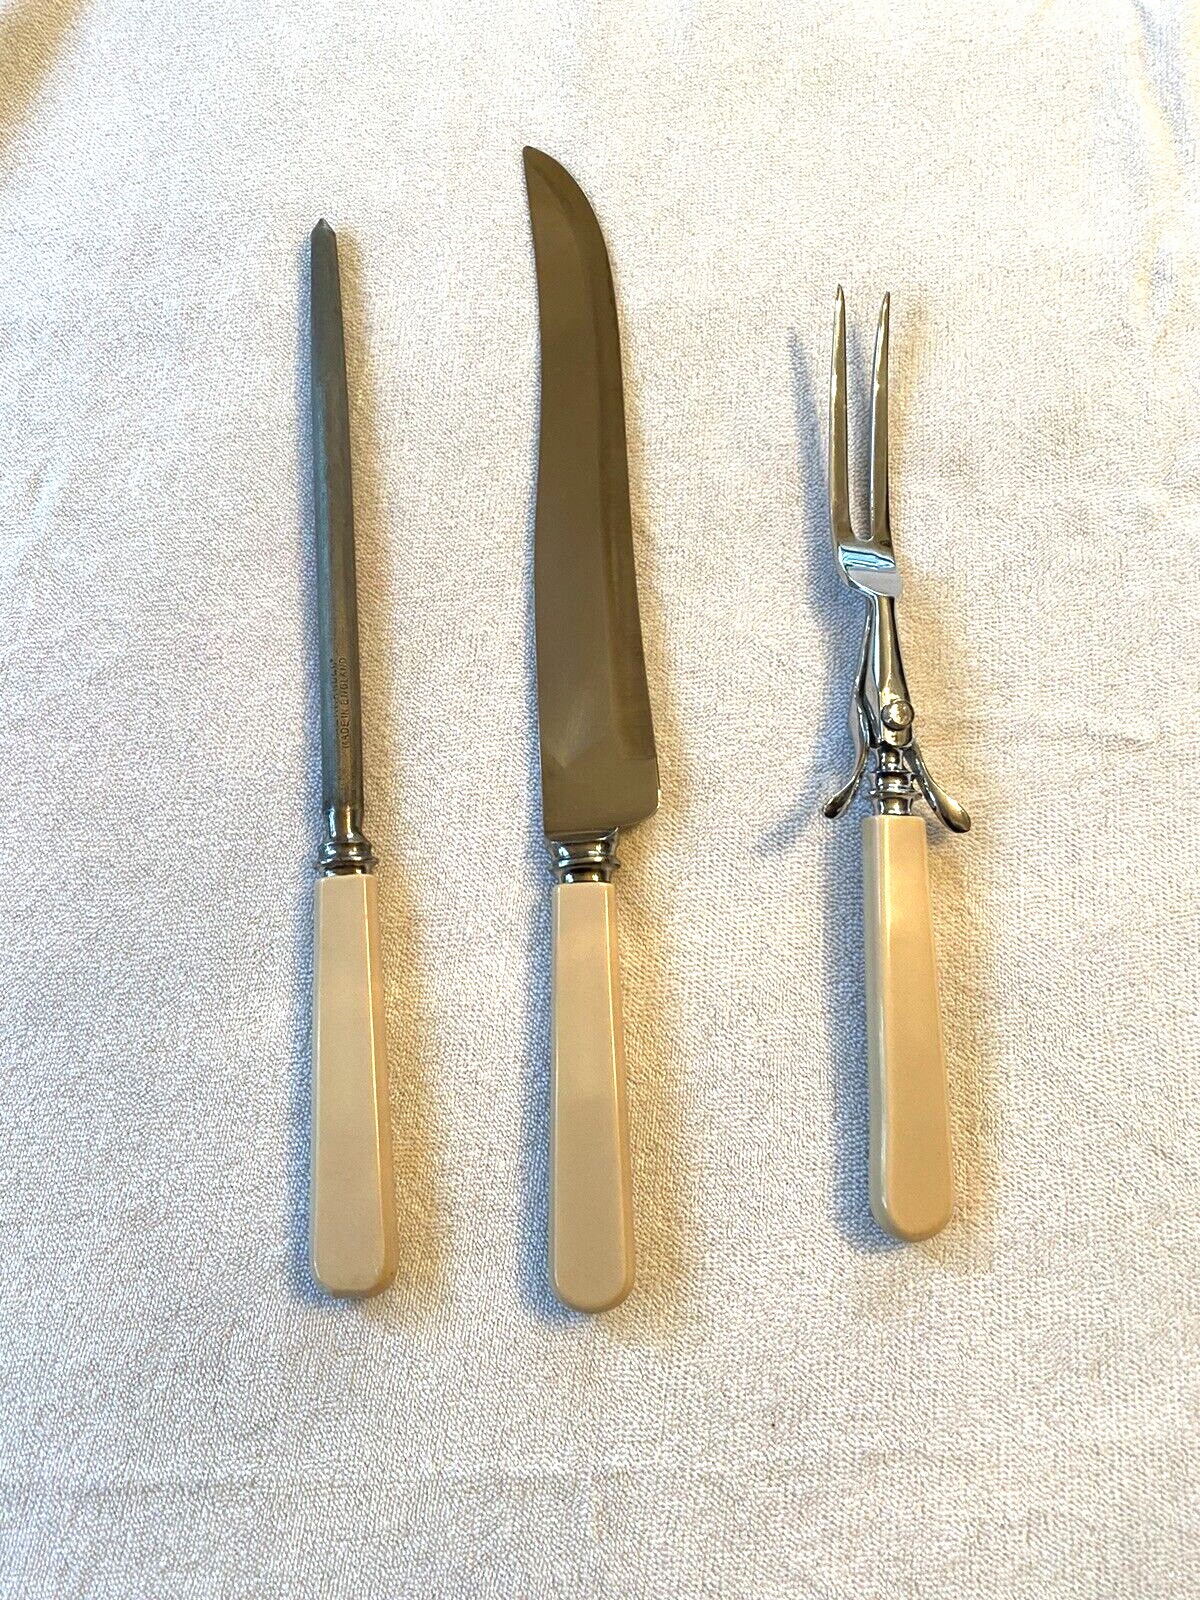 Vtg Bernard 101 Cutlers Sheffield England, Carving Set, Knife, Fork, Sharpener